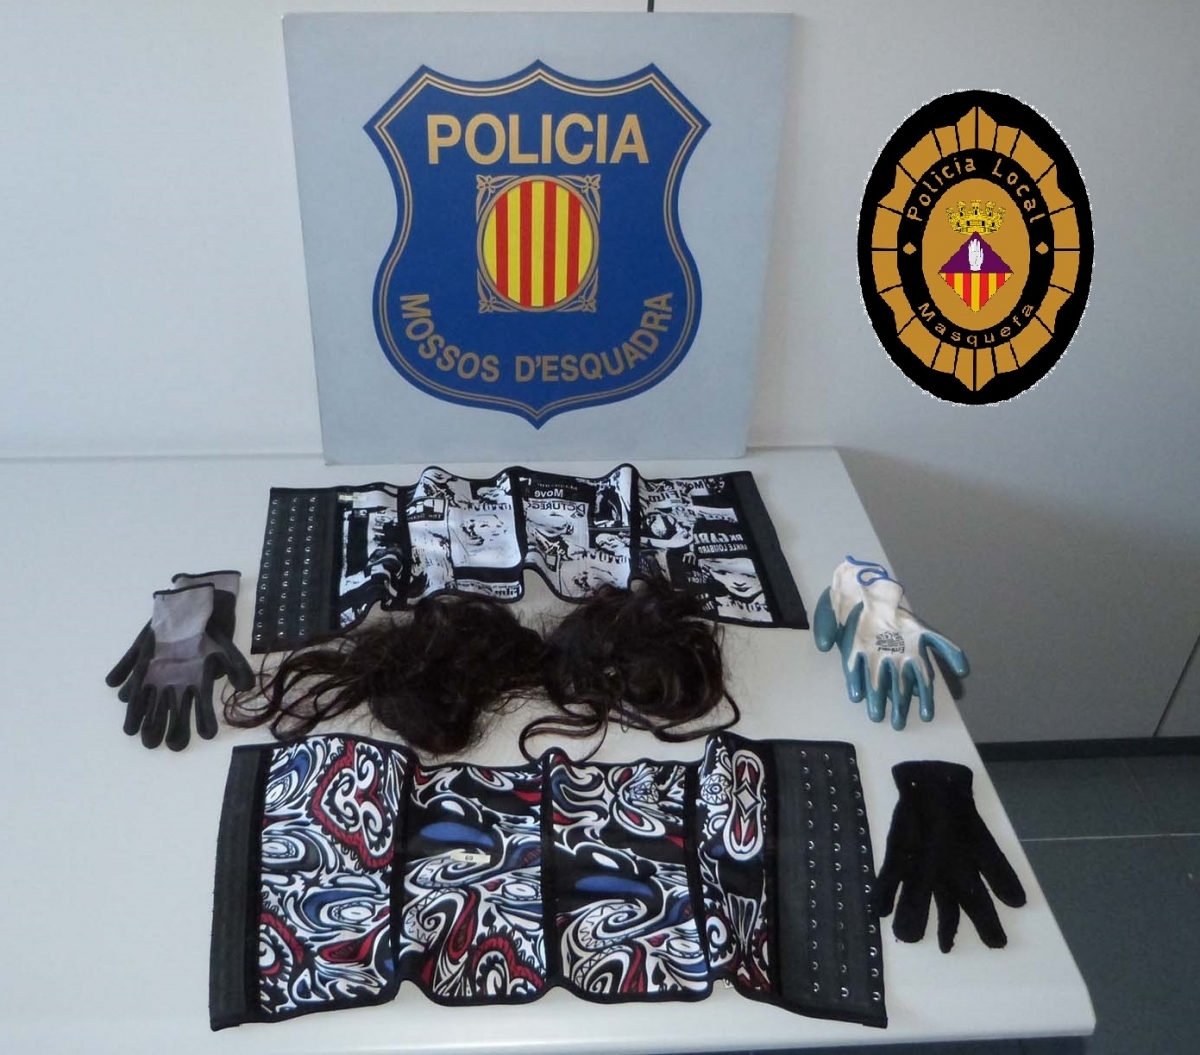 Objectes trobats en l'escorcoll als detinguts